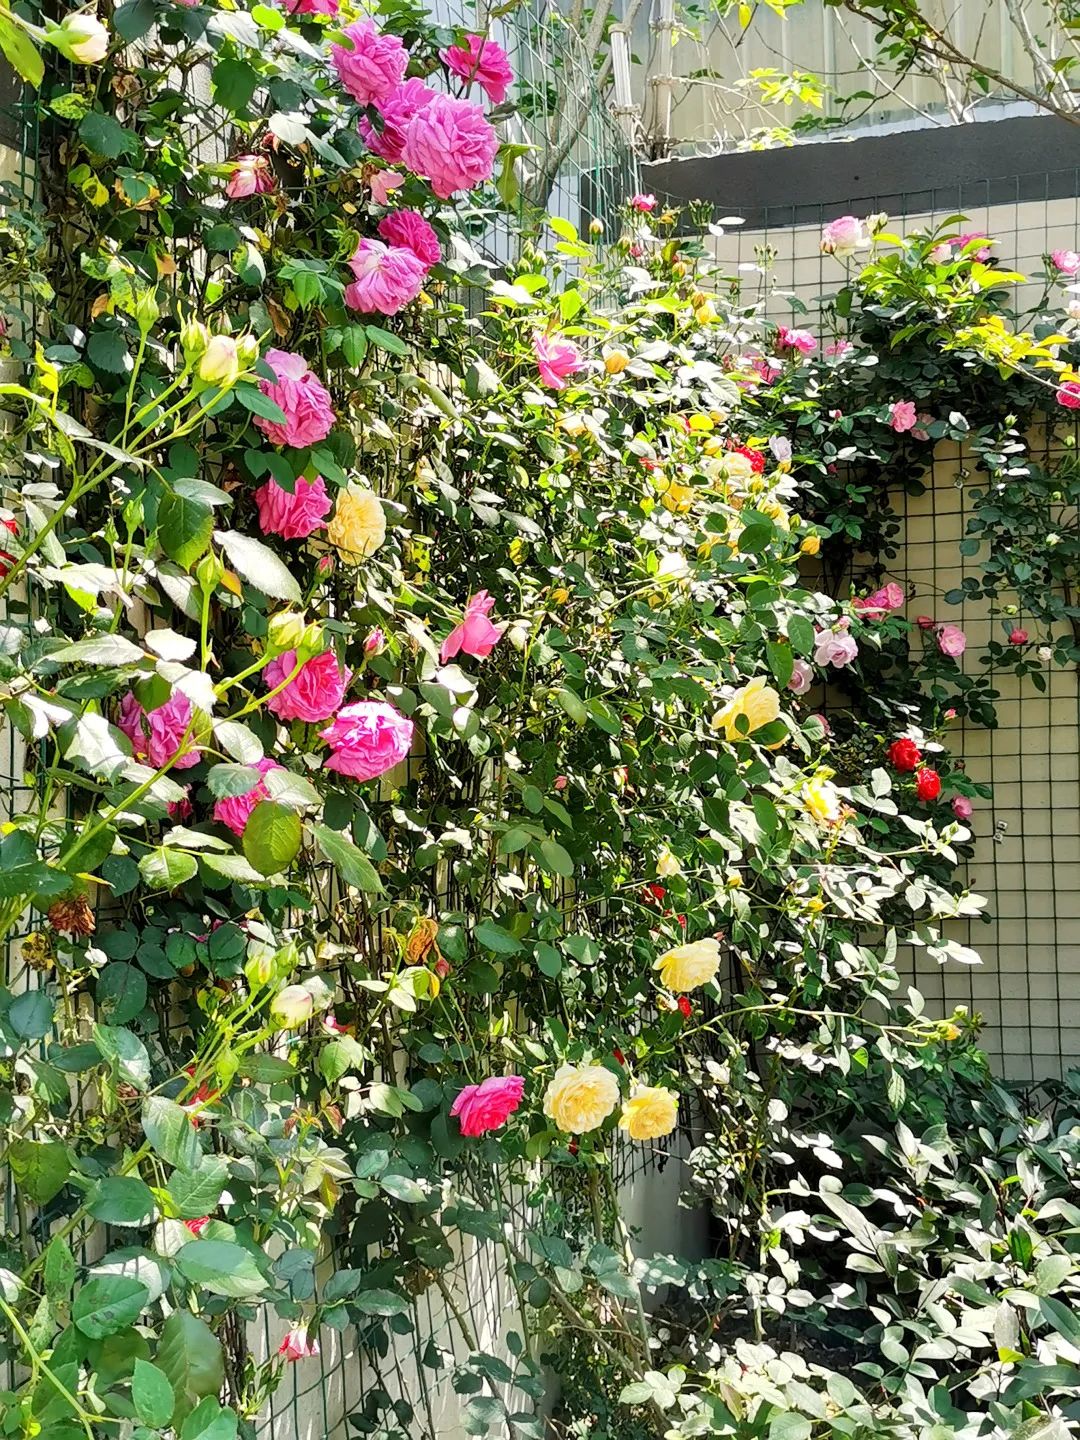 爬藤月季,紫鹃,玫瑰……这条超美景观道路在你家附近吗?